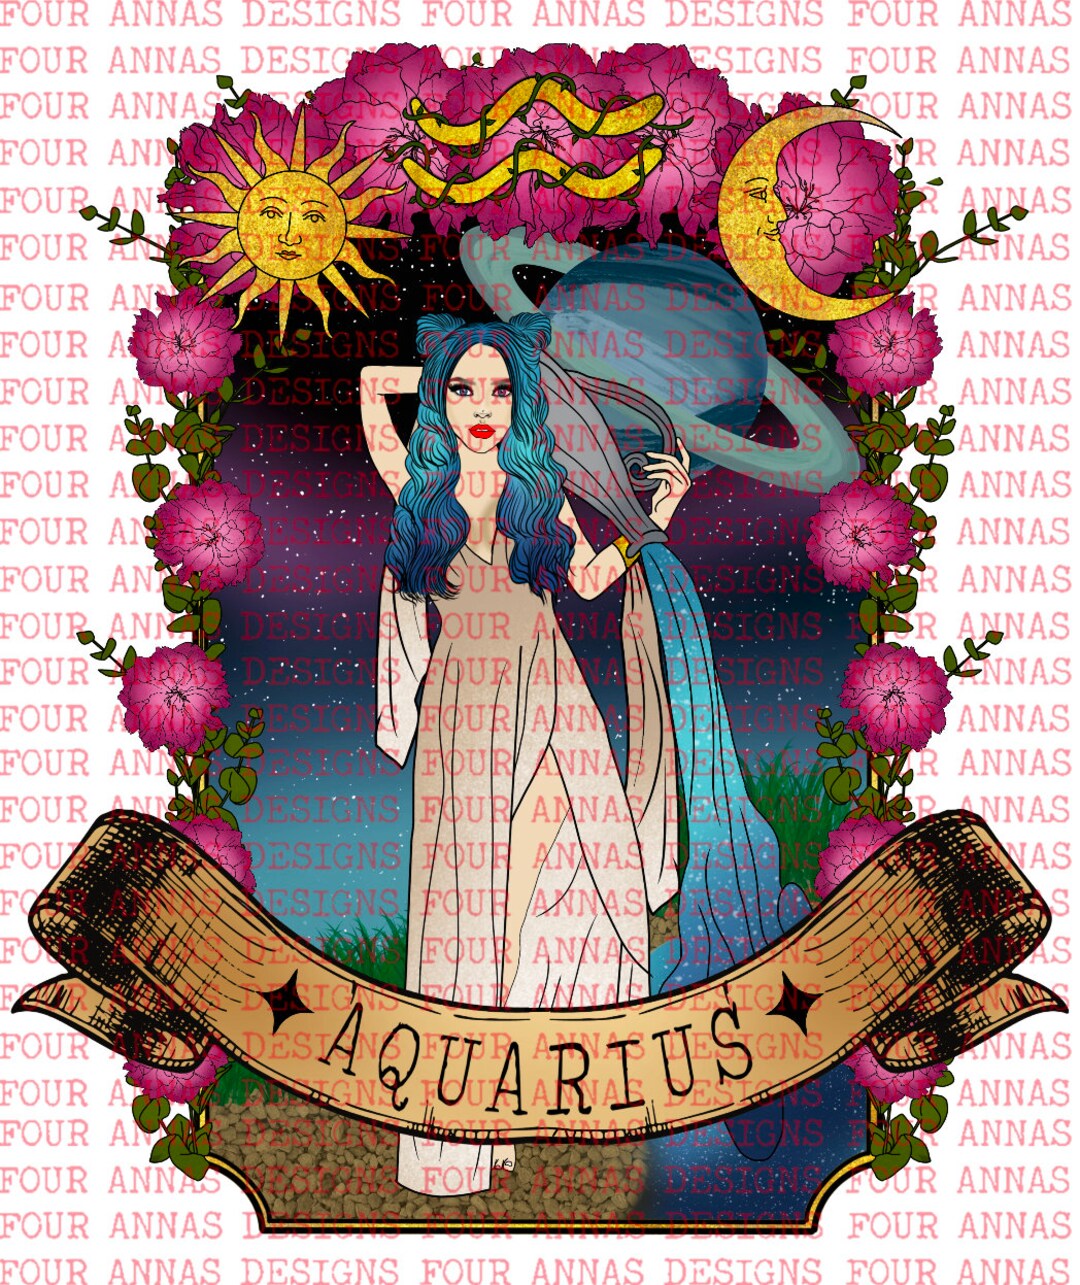 Aquarius Floral Gothic Retro Witchy Celestial Mushrooms - Etsy